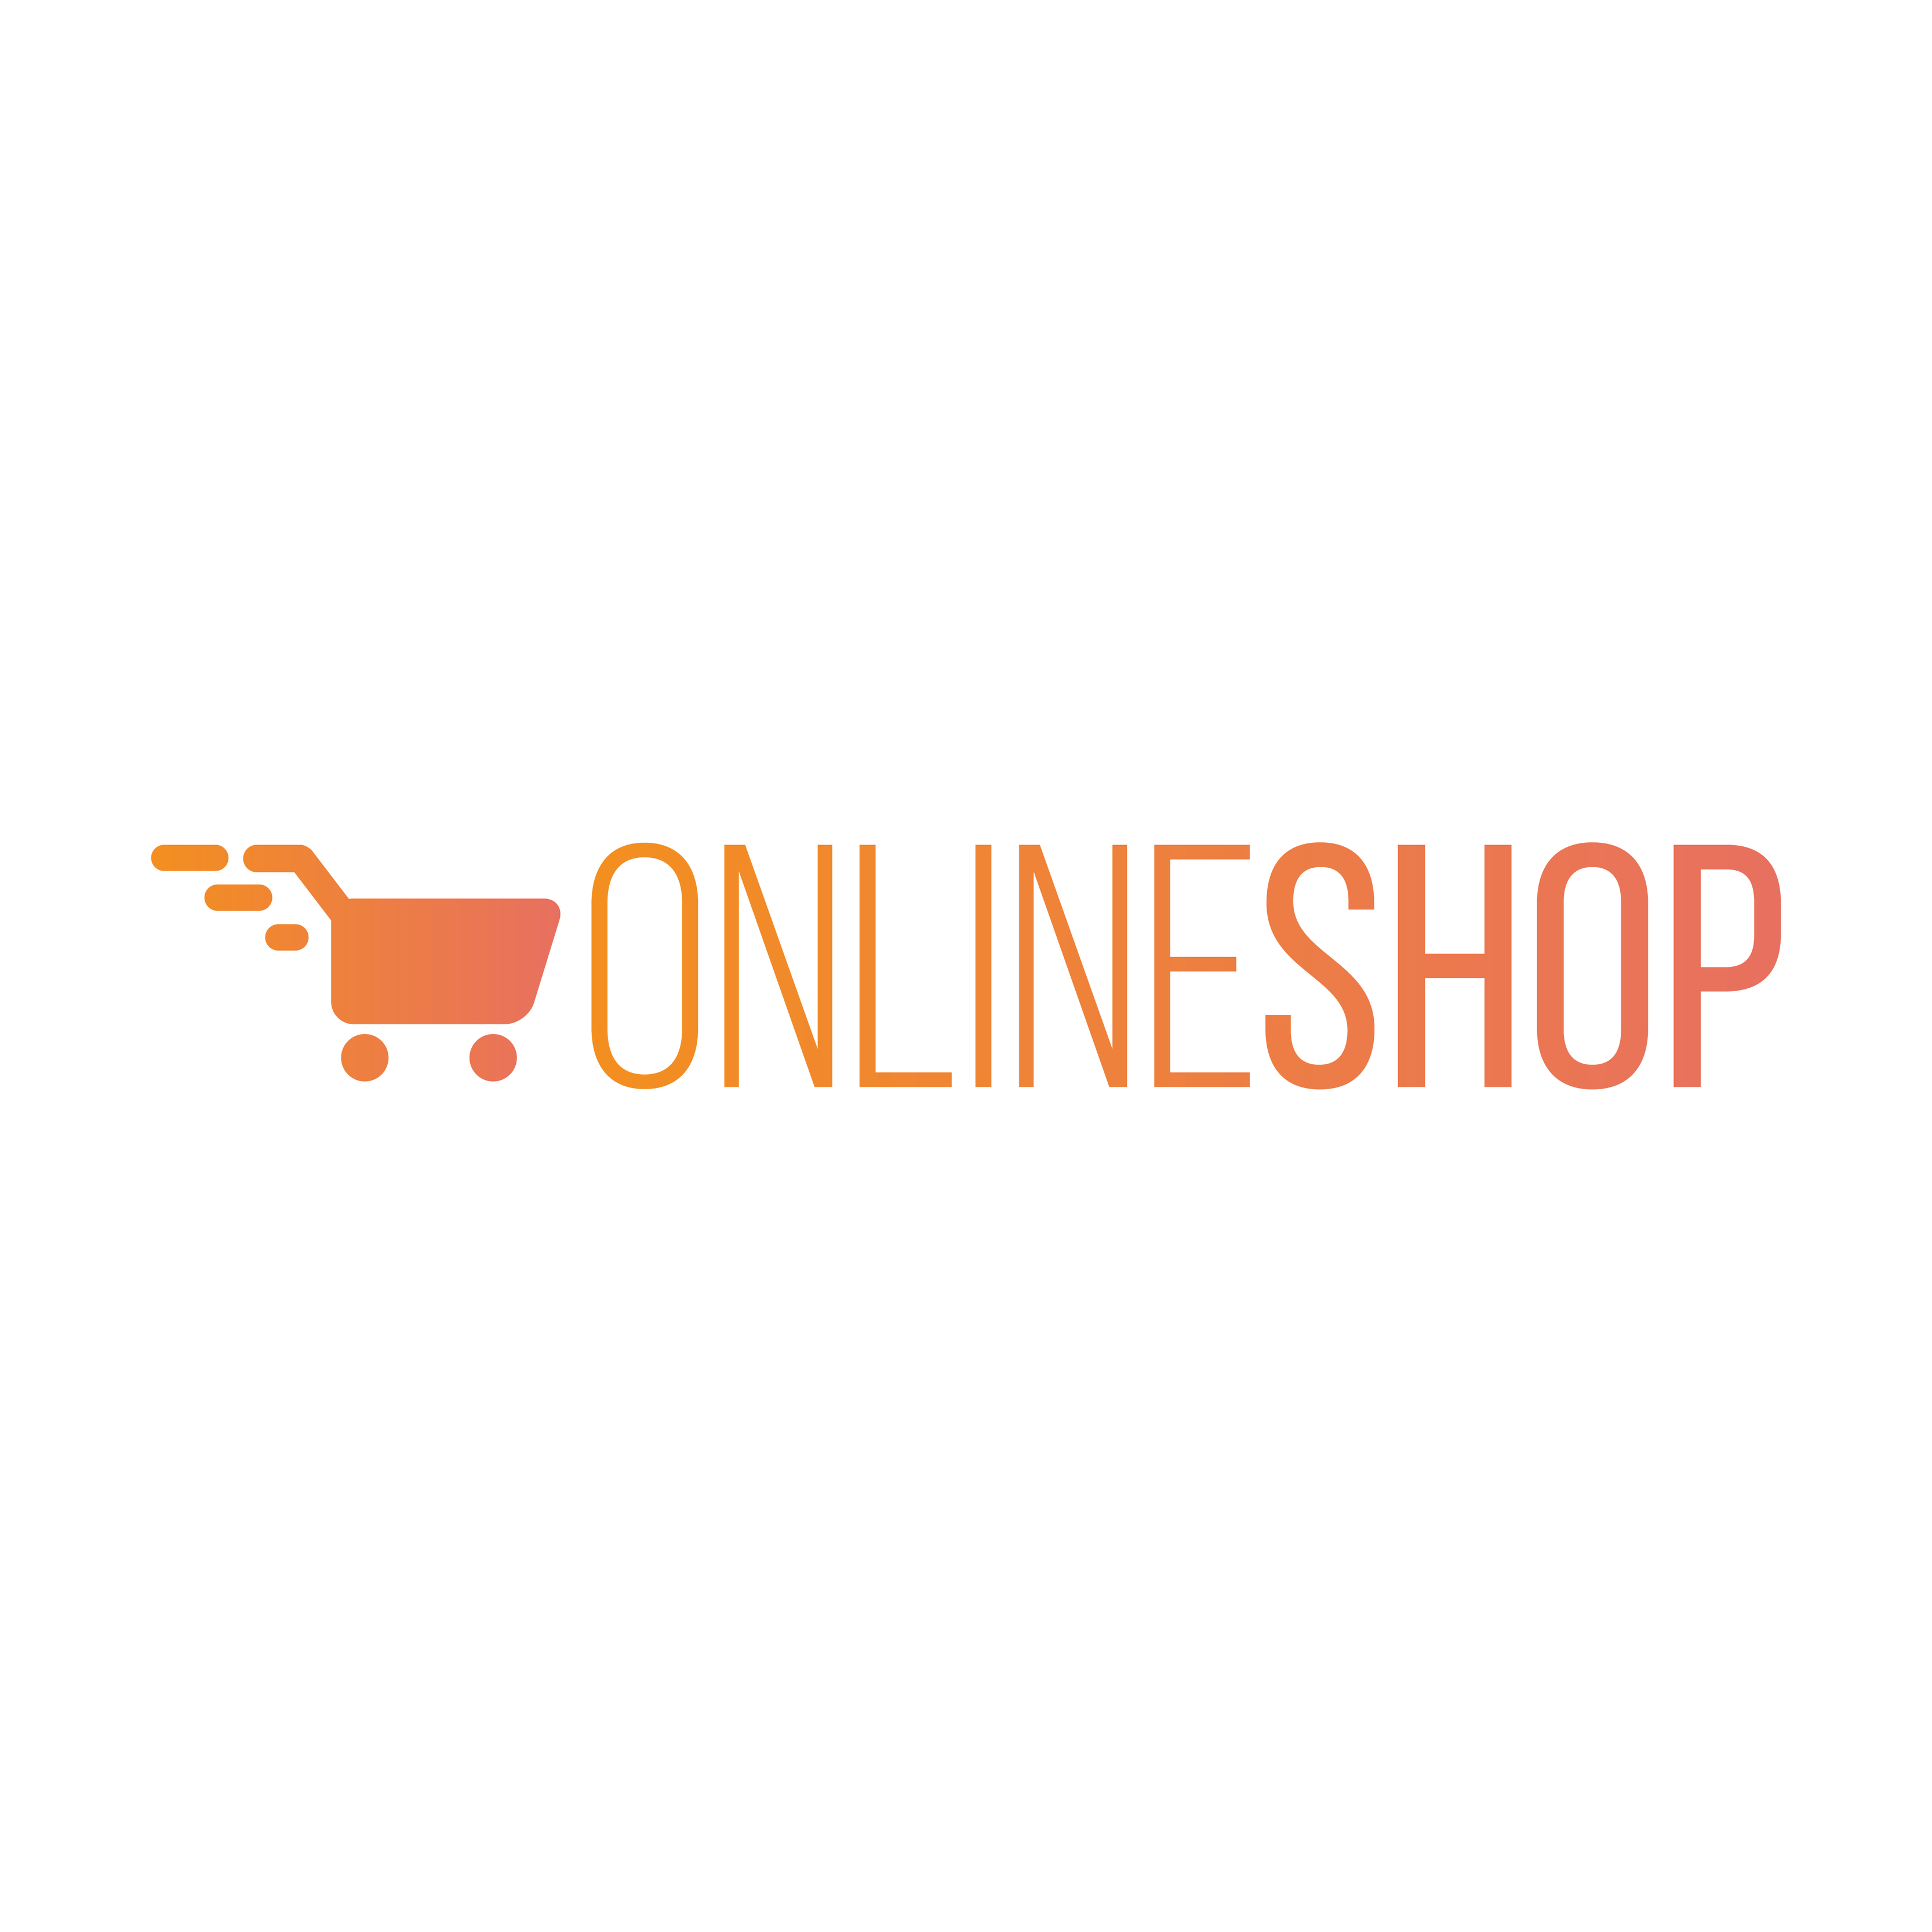 Online Shop Logo 4818903 Vector Art at Vecteezy